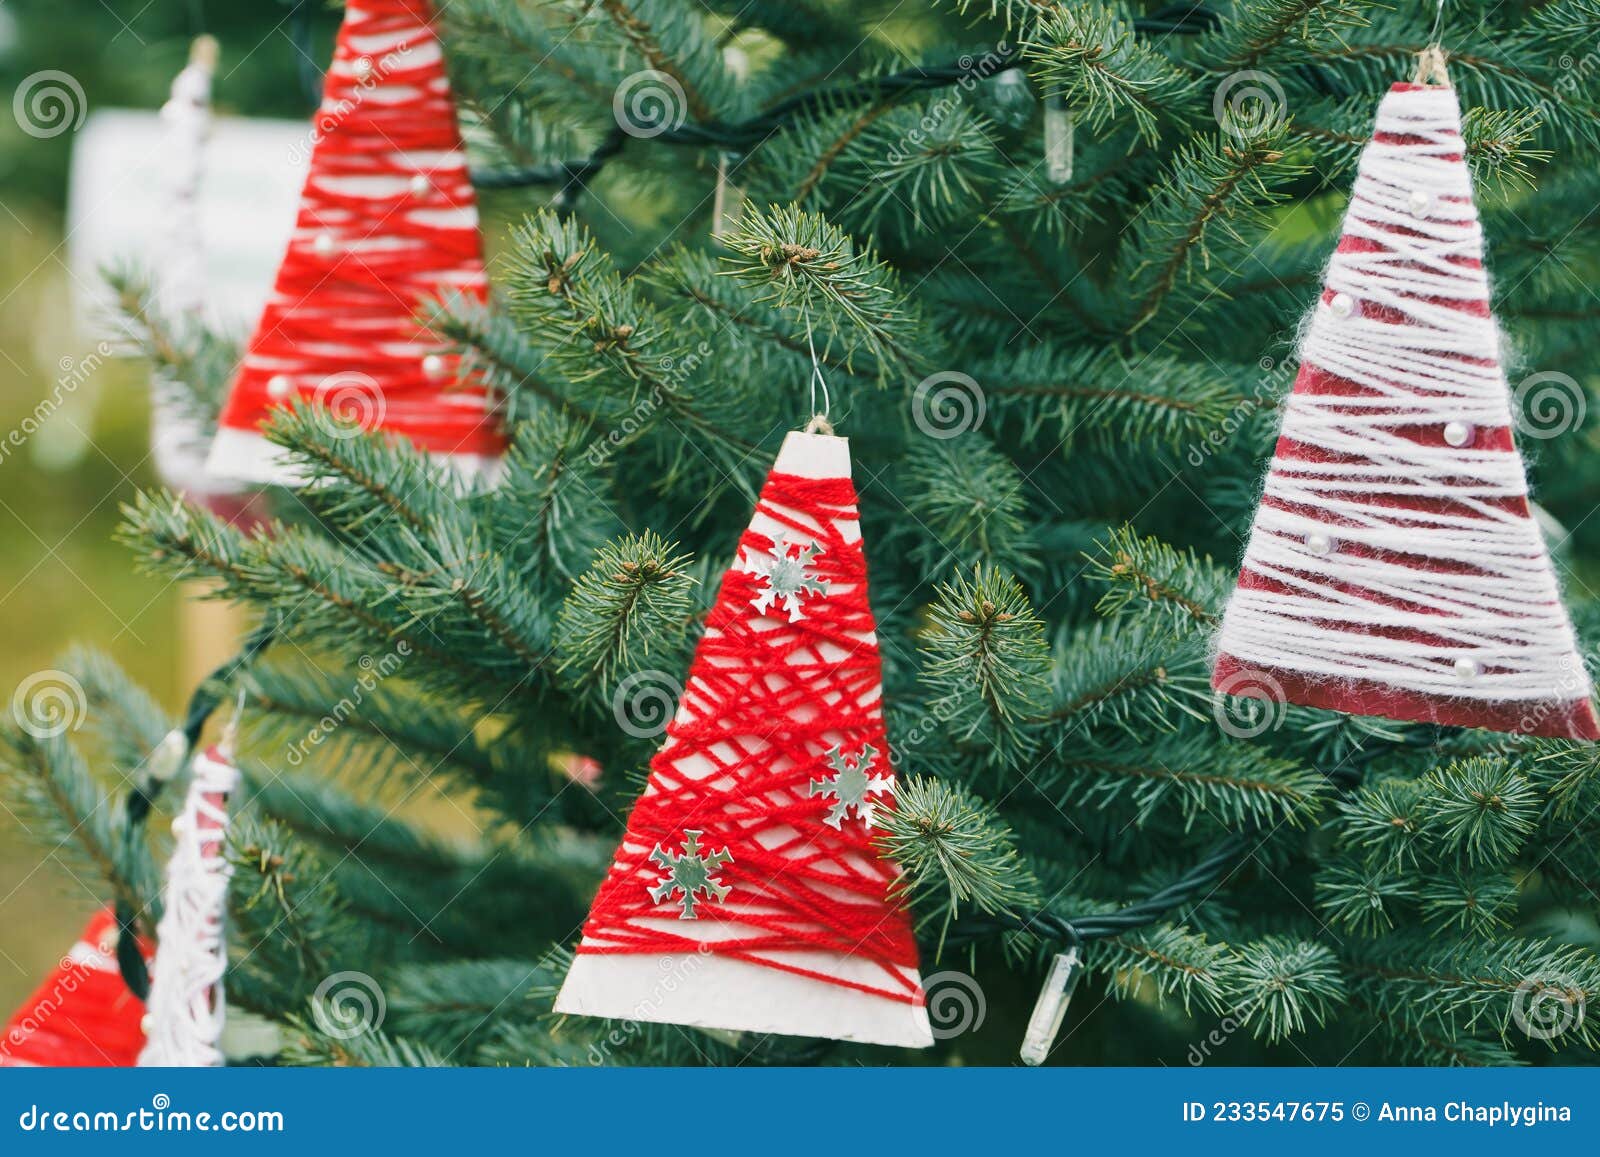 Decoração De Fios De Frio Numa árvore De Natal Imagem de Stock - Imagem de  vermelho, artesanal: 233547675